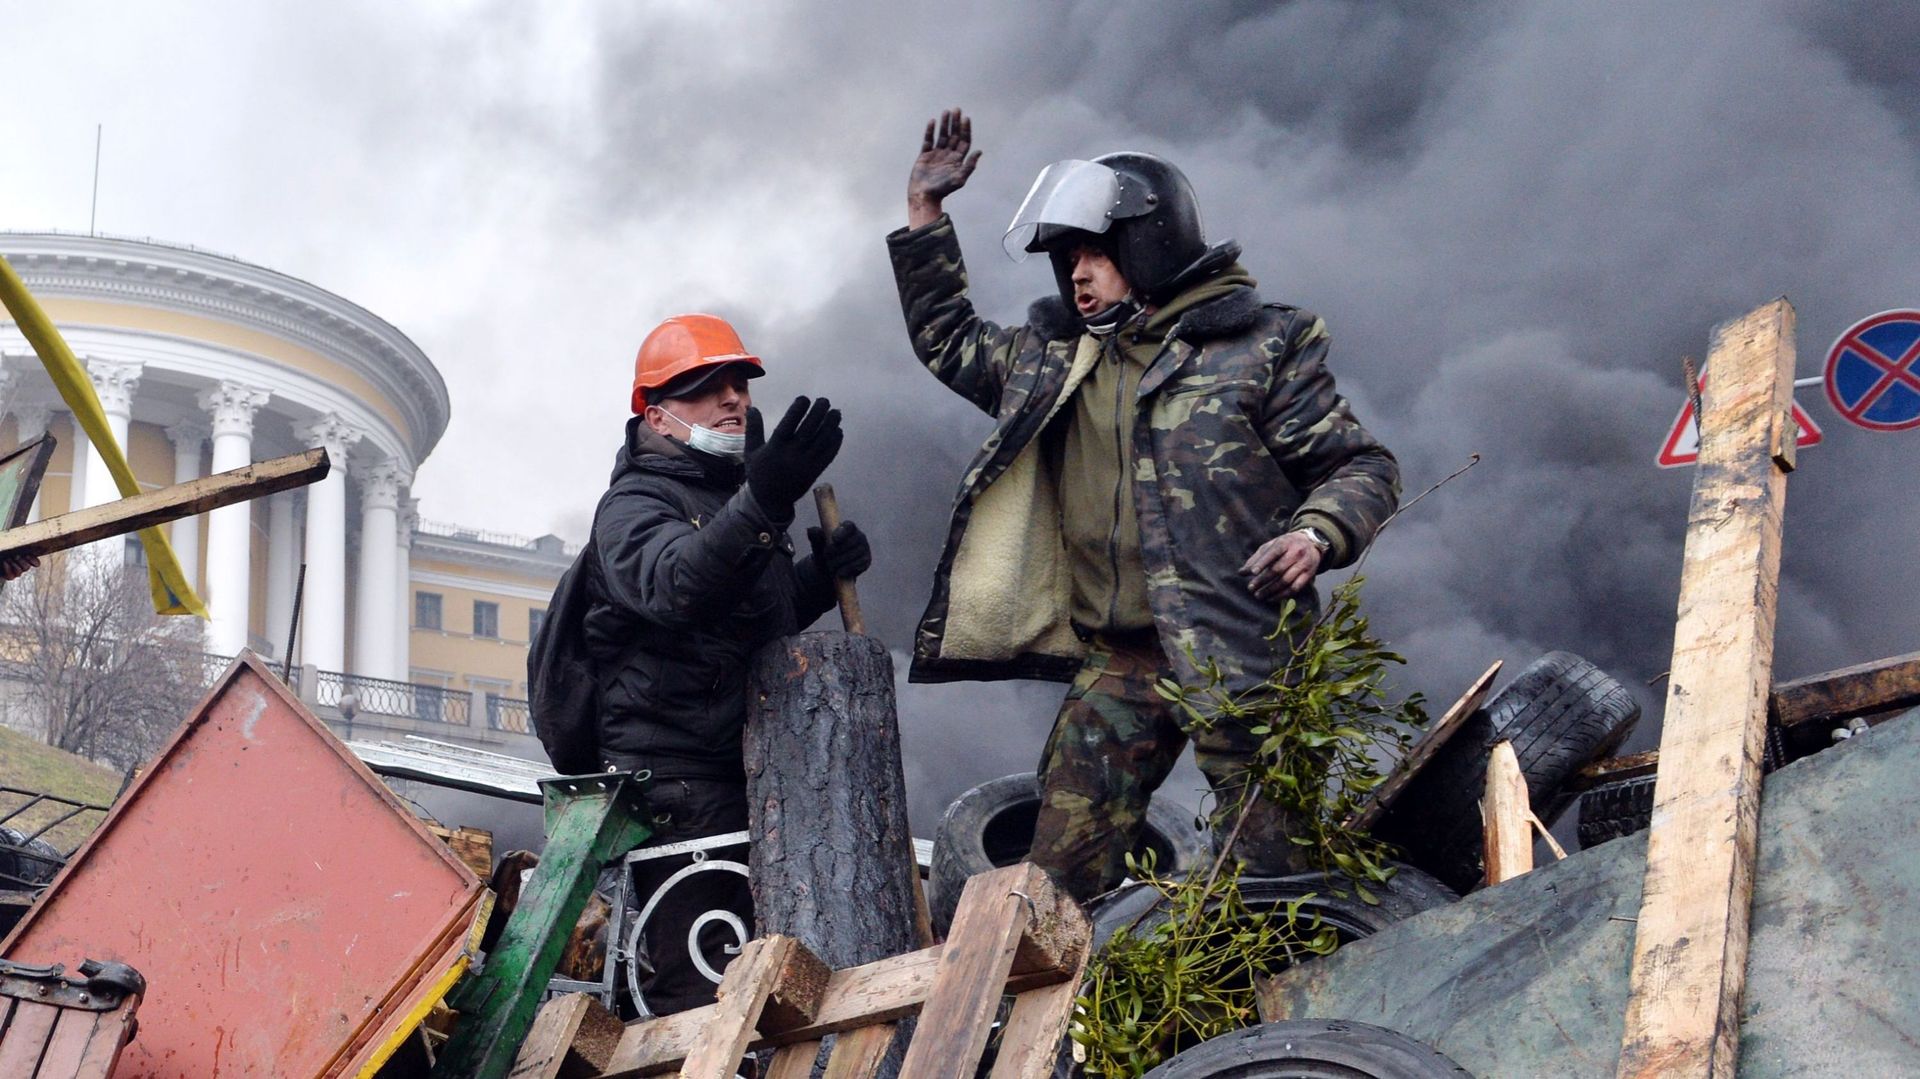 Les combats de rue en Ukraine, exercice de prédilection des extrémistes